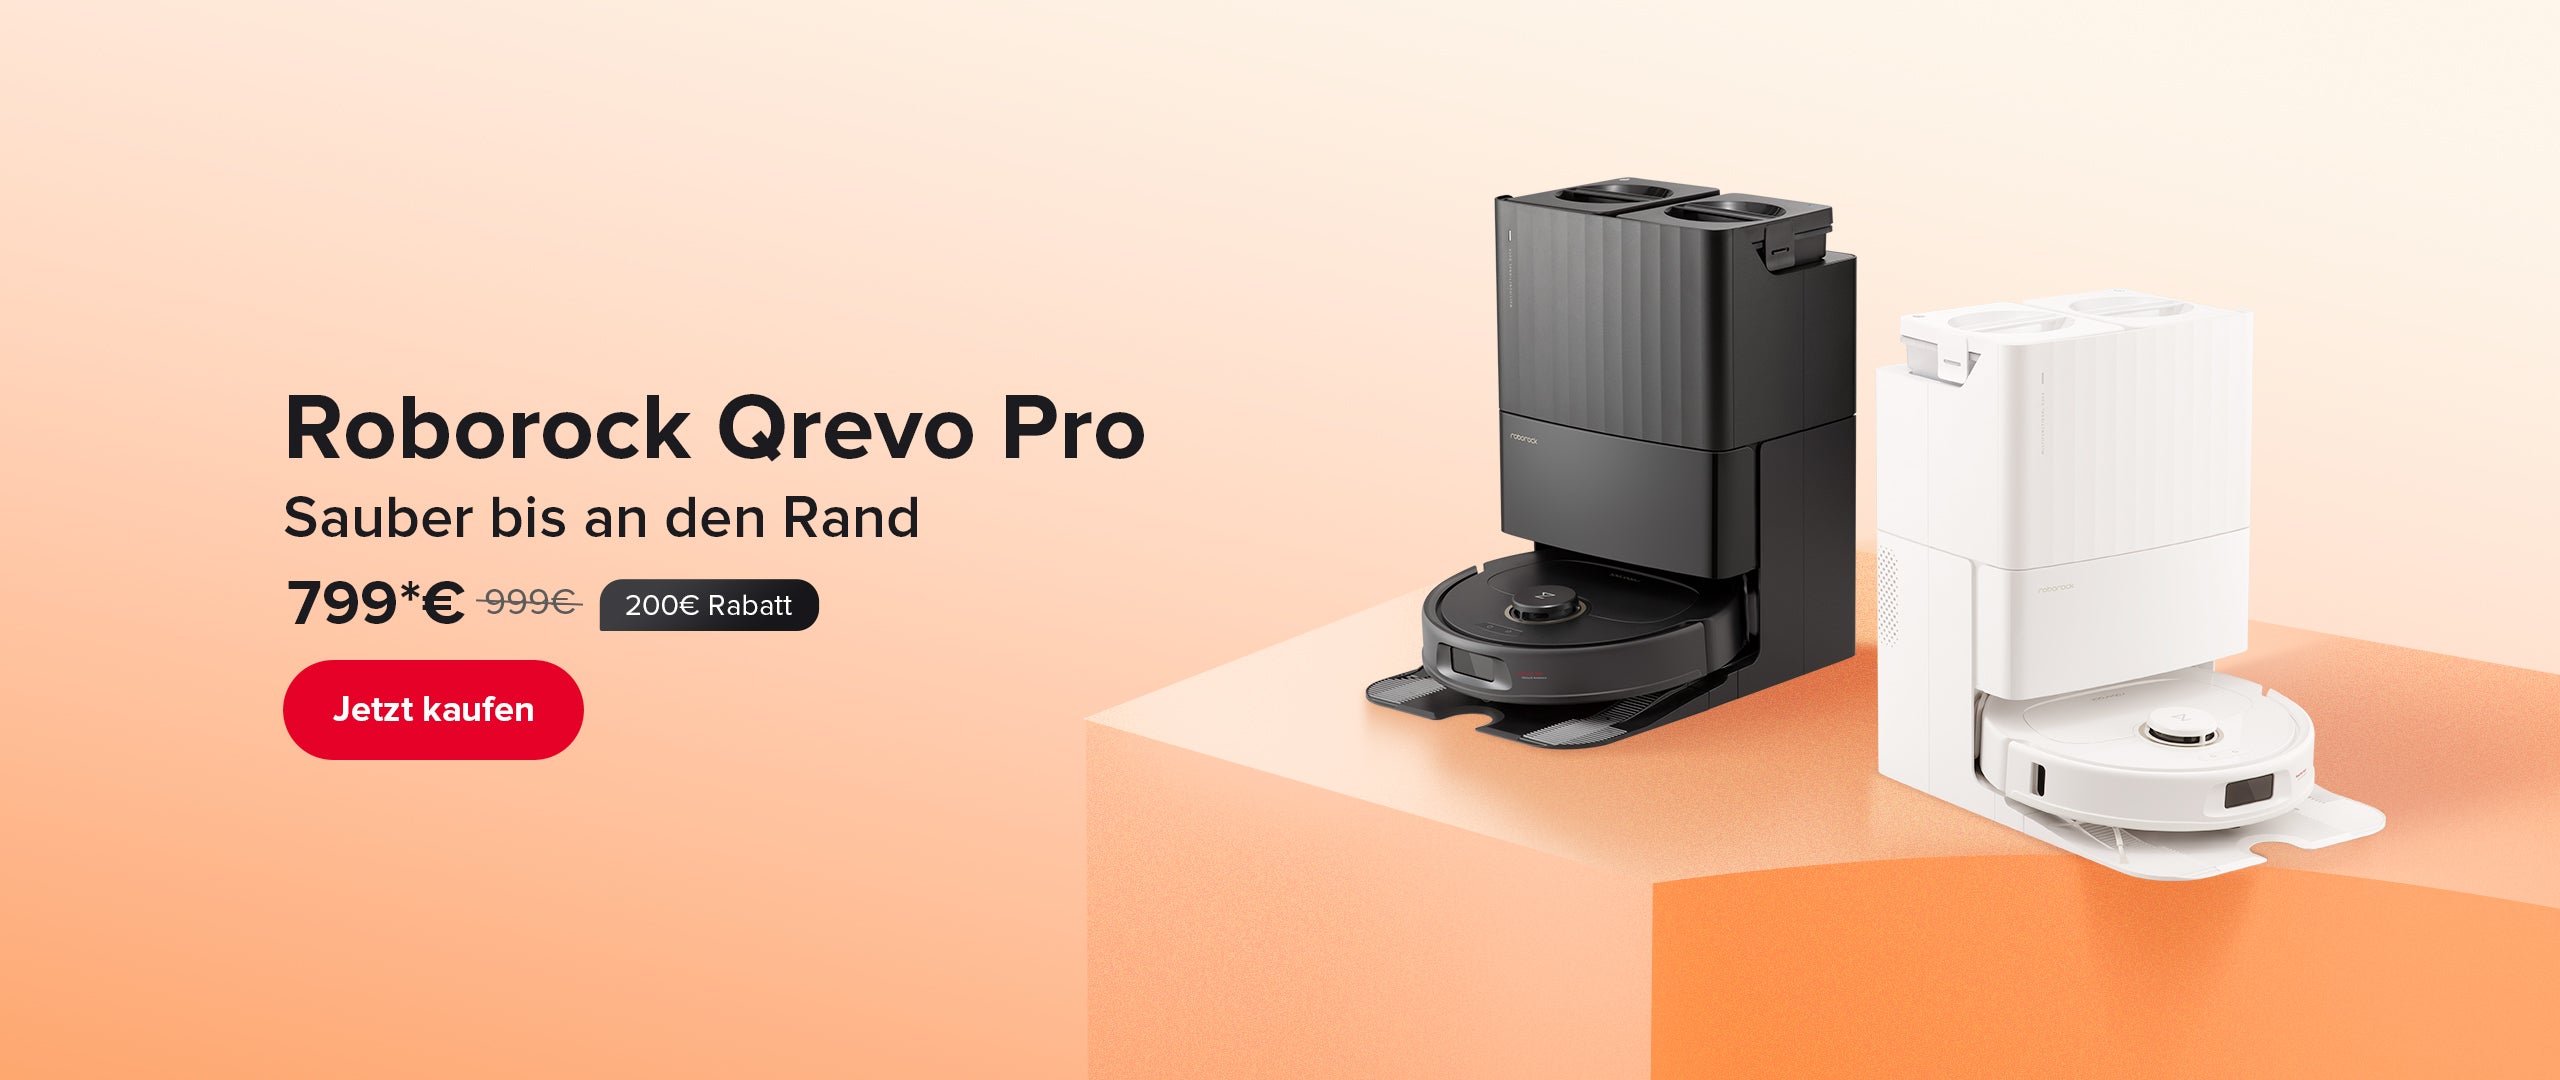 Roborock Qrevo MaxV Open Sale Amazon